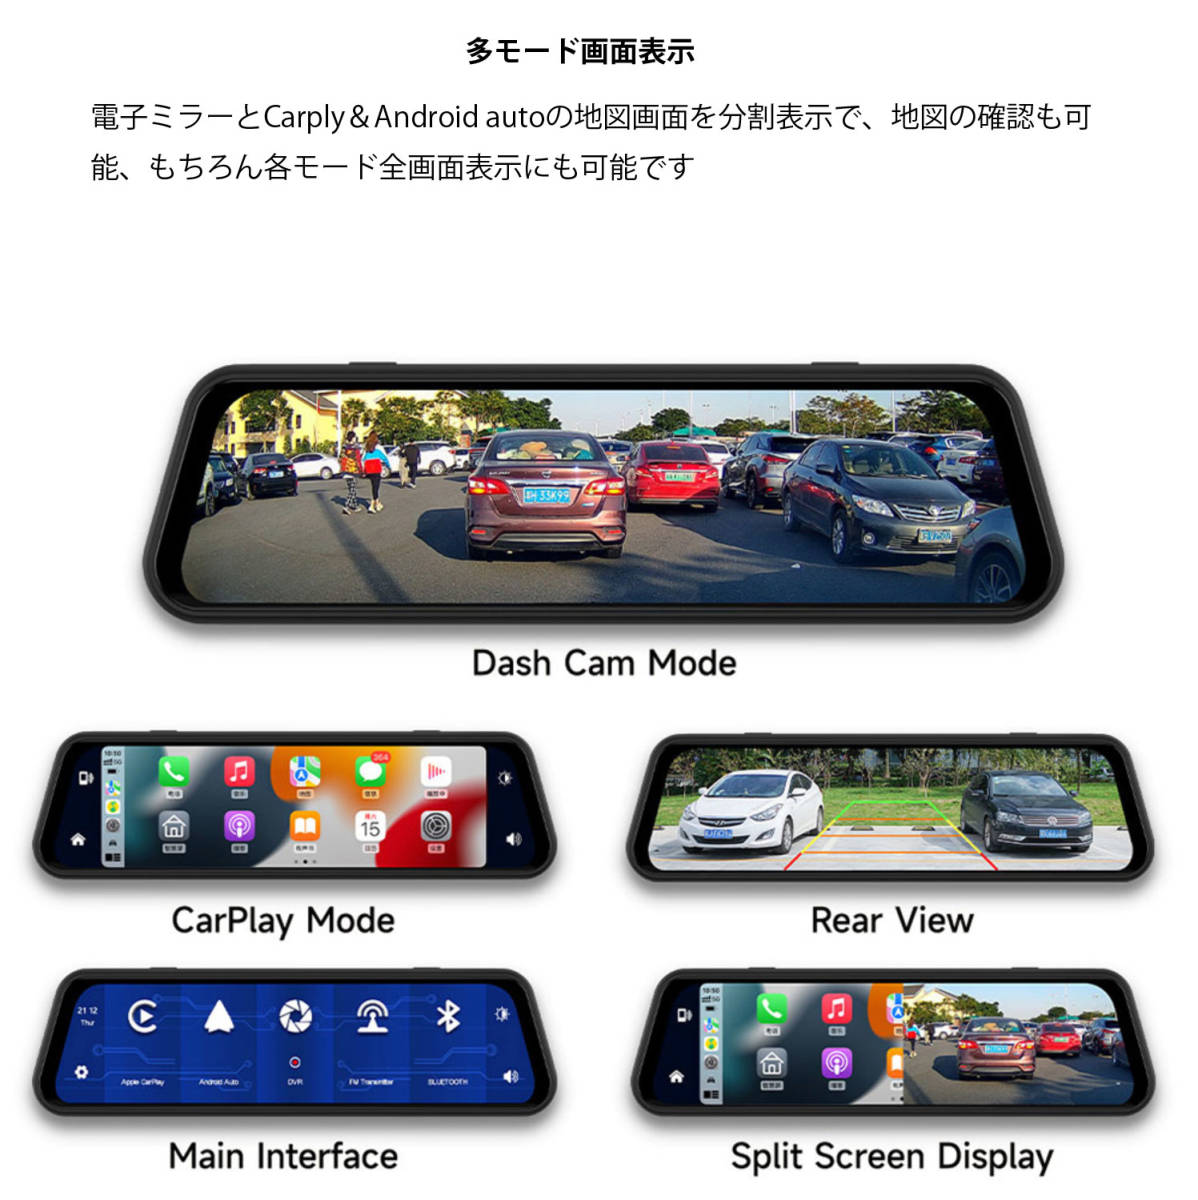  беспроводной Carplay AndroidAuto соответствует тип зеркала регистратор пути (drive recorder) правая сторона камера портативный navi навигационная система высокое разрешение 2 камера одновременно видеозапись 